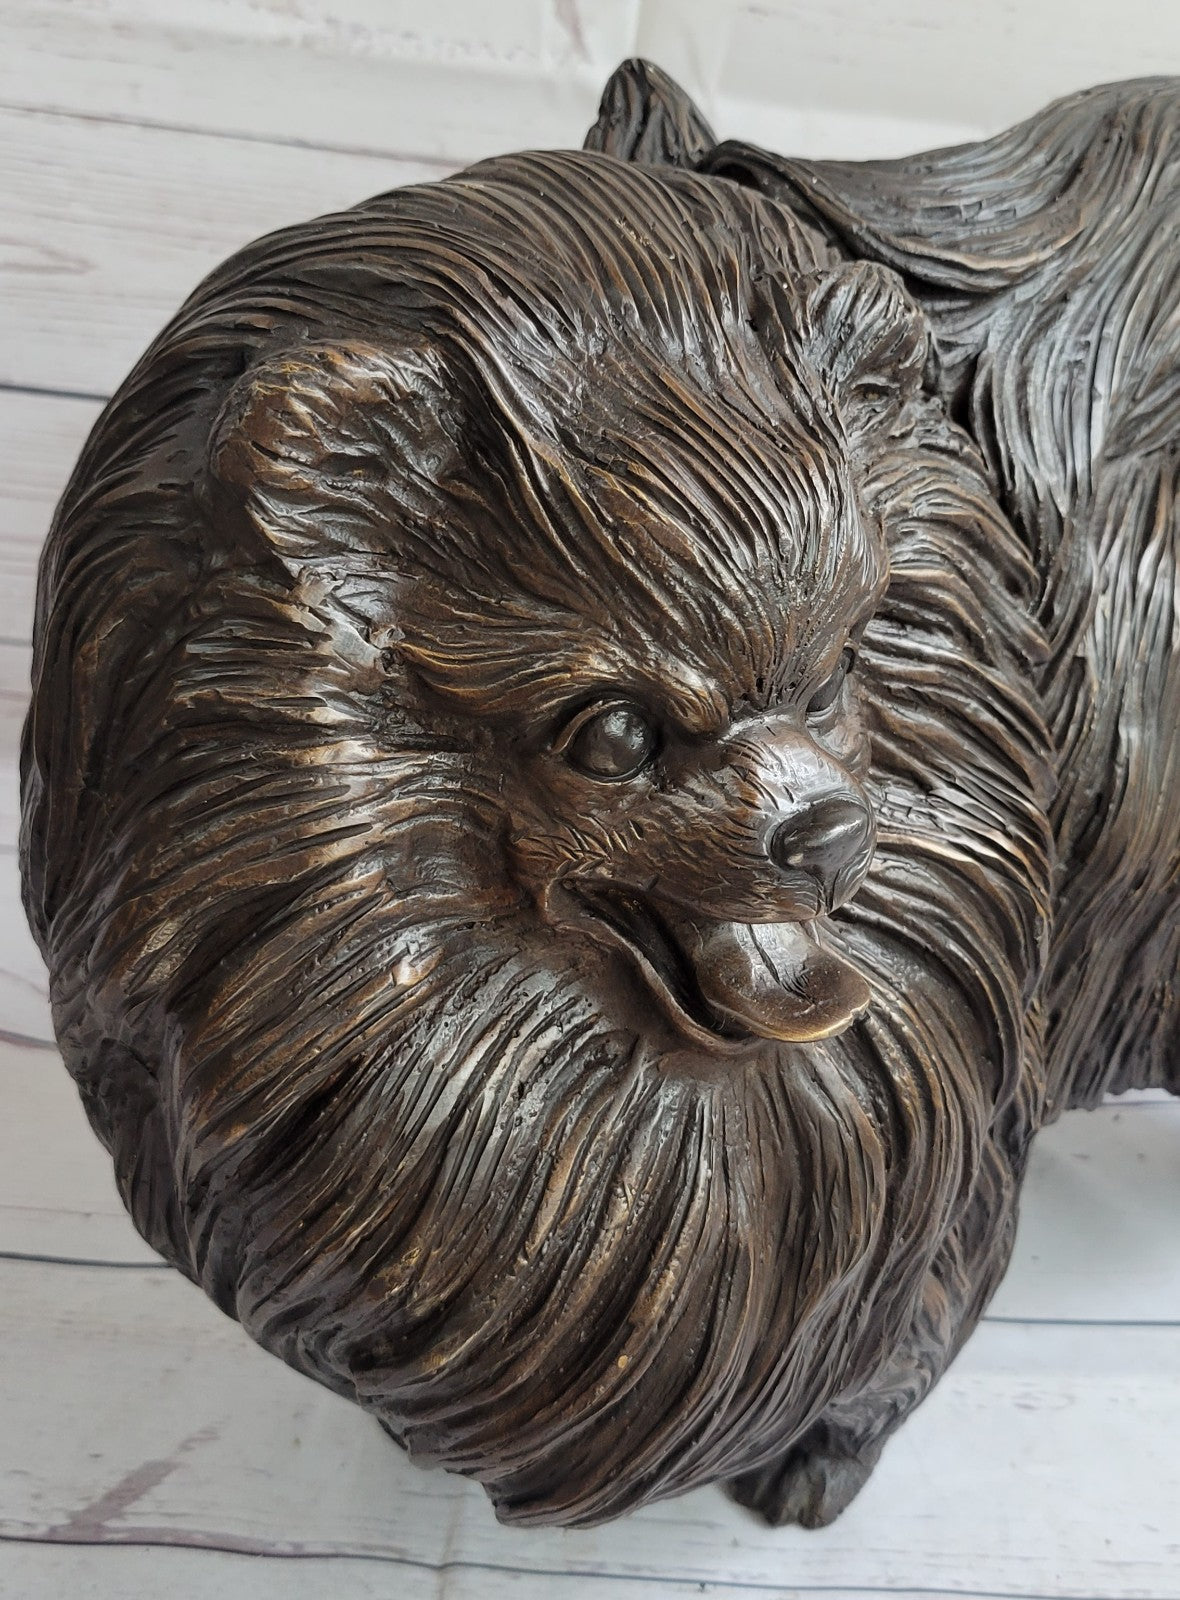 Pomeranian dog - a Extra Large statuette of bronze, metal figurine sculpture Art